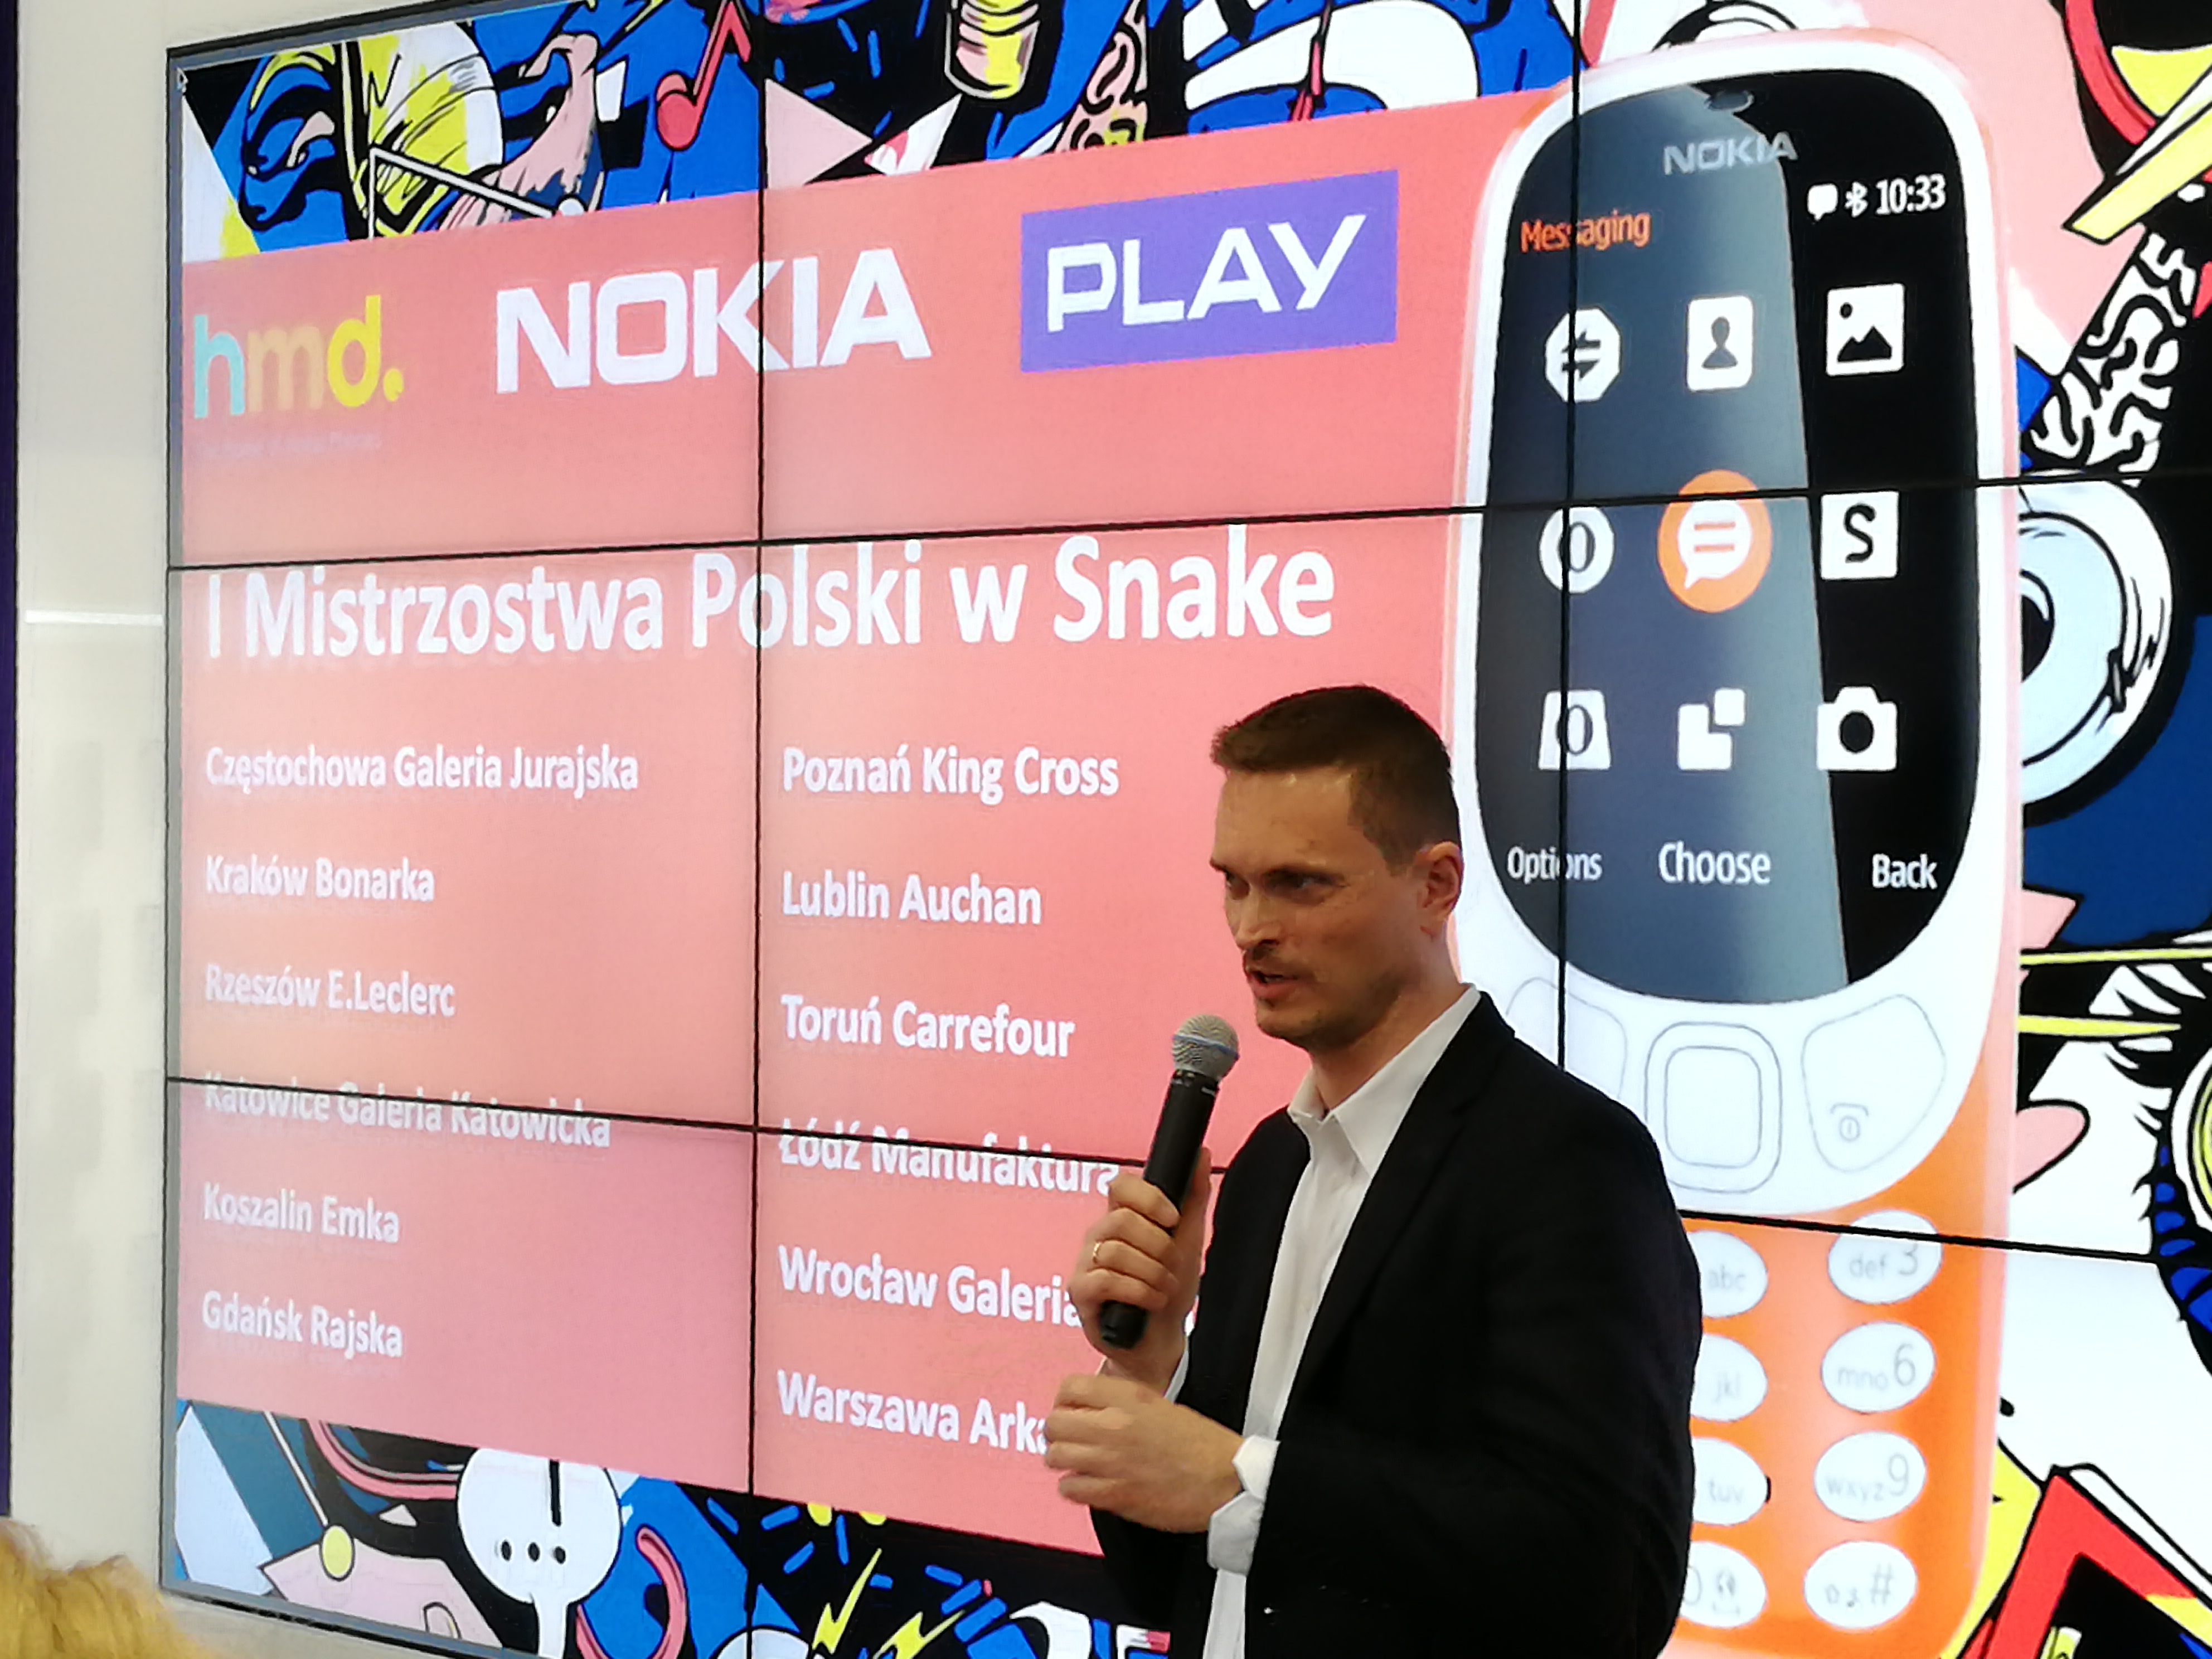 HMD Global только что объявил, что новый Nokia 3310 выходит на польский рынок